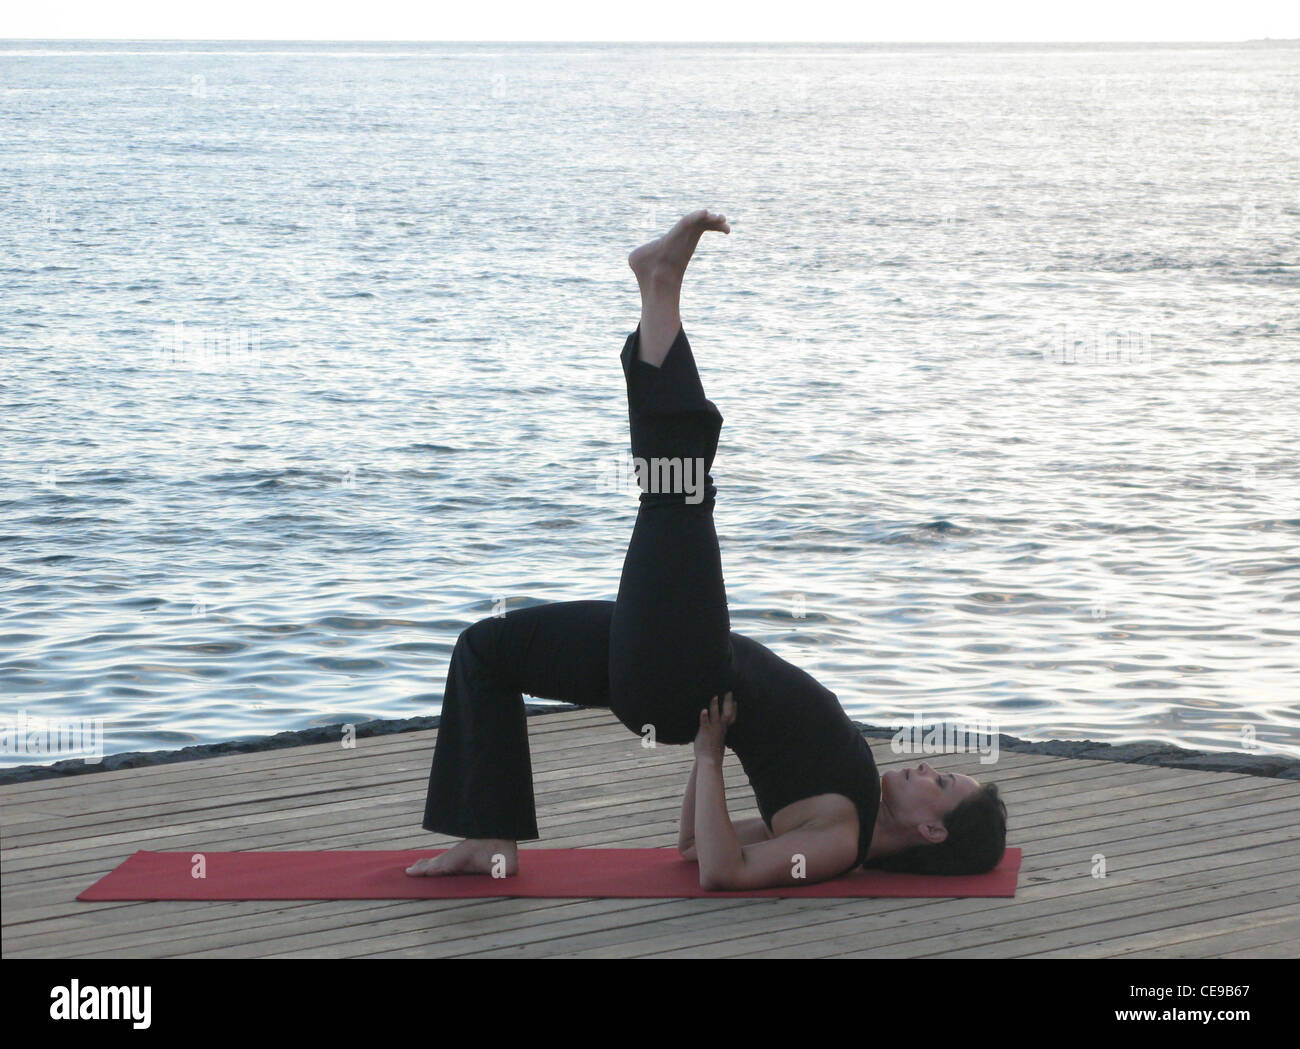 Yoga Pose Woman doing Setu Bandha Sarvangasana (Bridge Pose Variation) with the ocean behind. Stock Photo